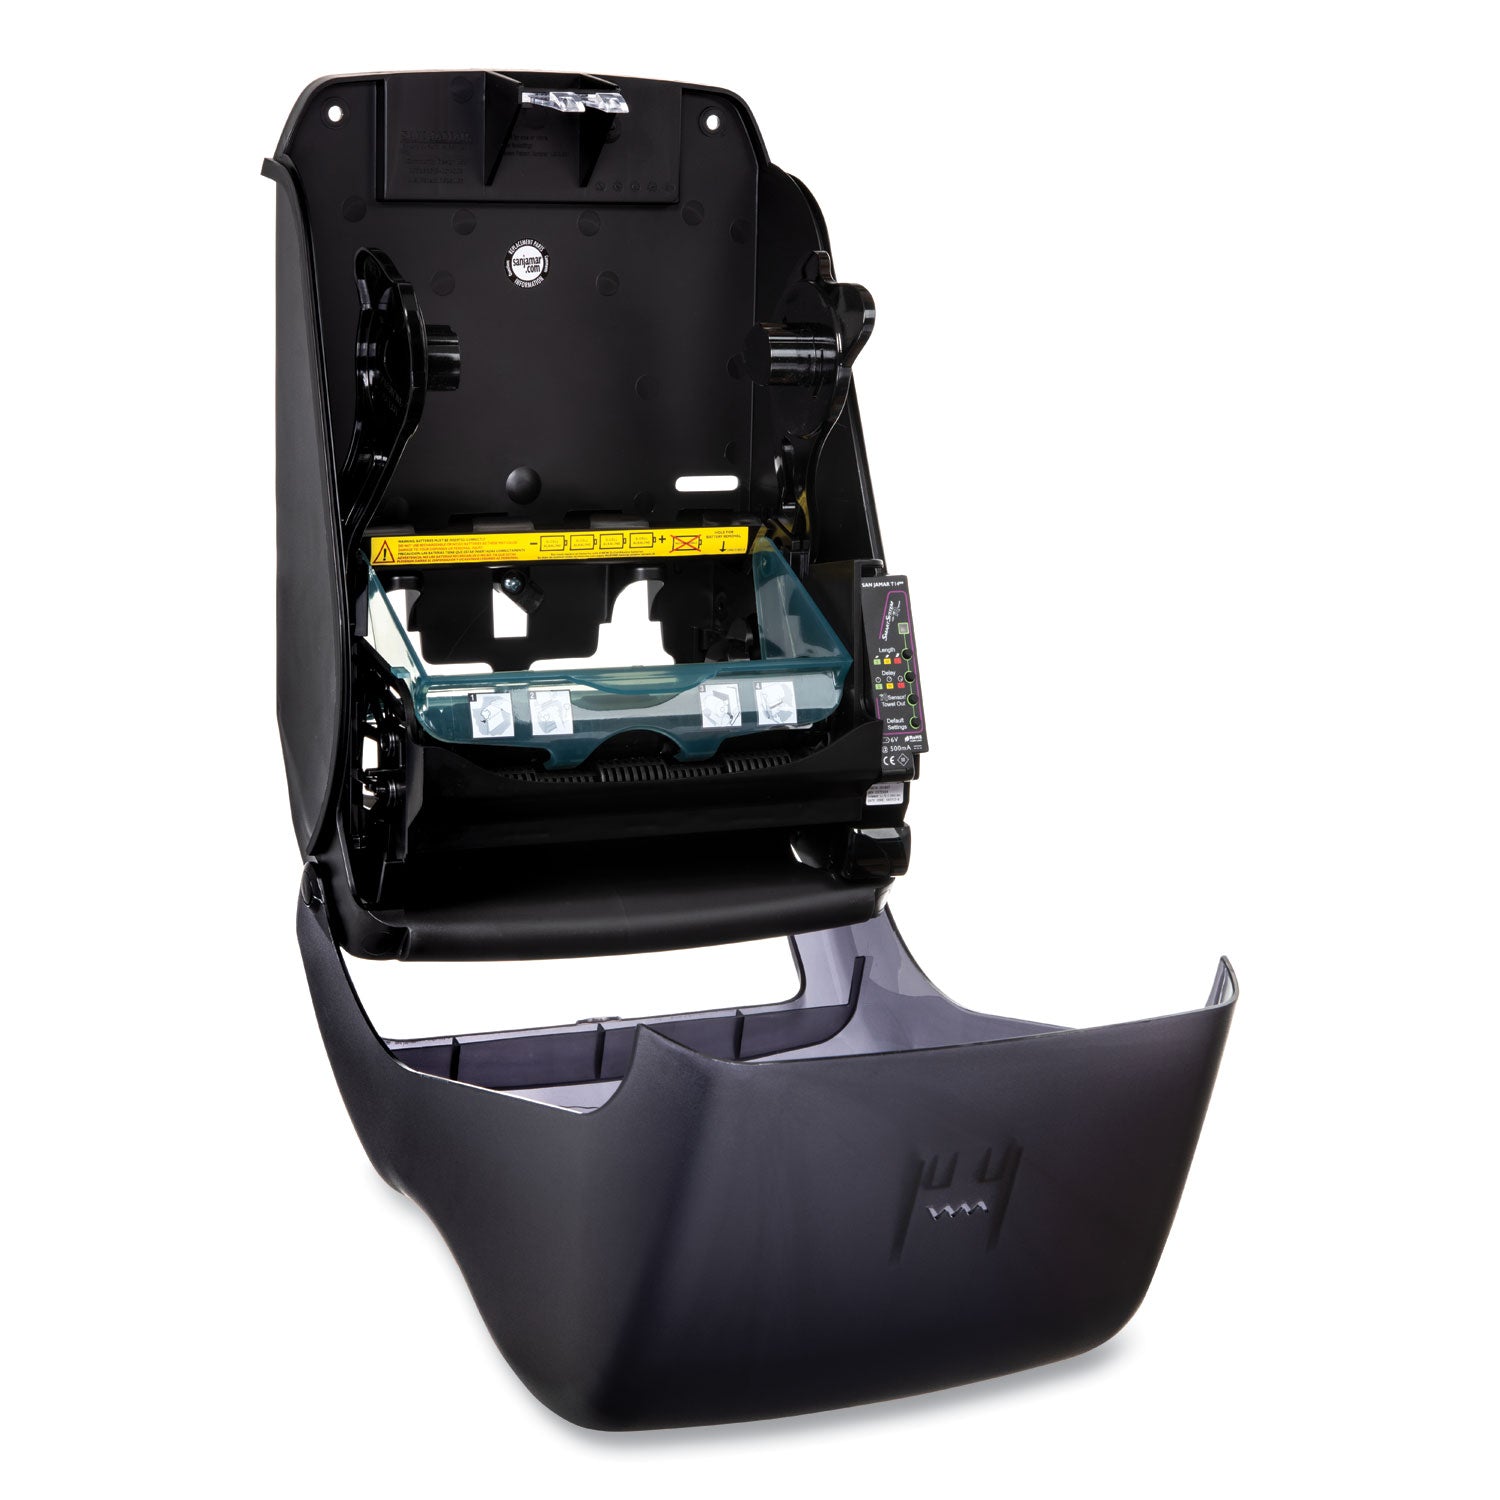 smart-system-with-iq-sensor-towel-dispenser-1175-x-925-x-165-black-pearl_sjmt1490tbk - 4